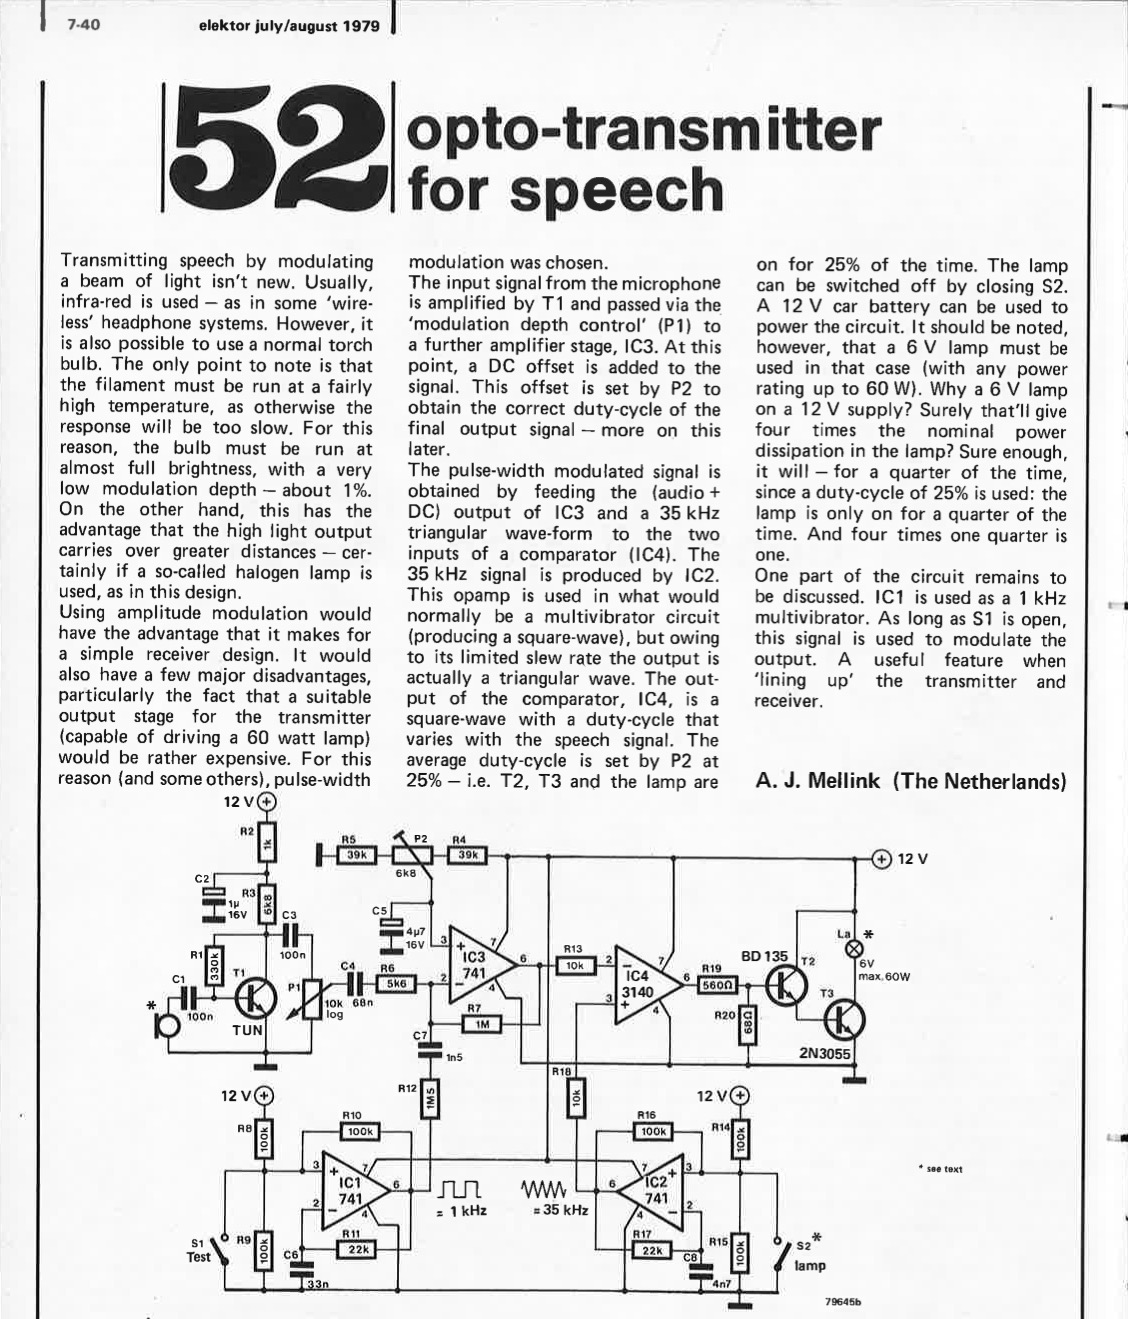 opto-transmitter for speech